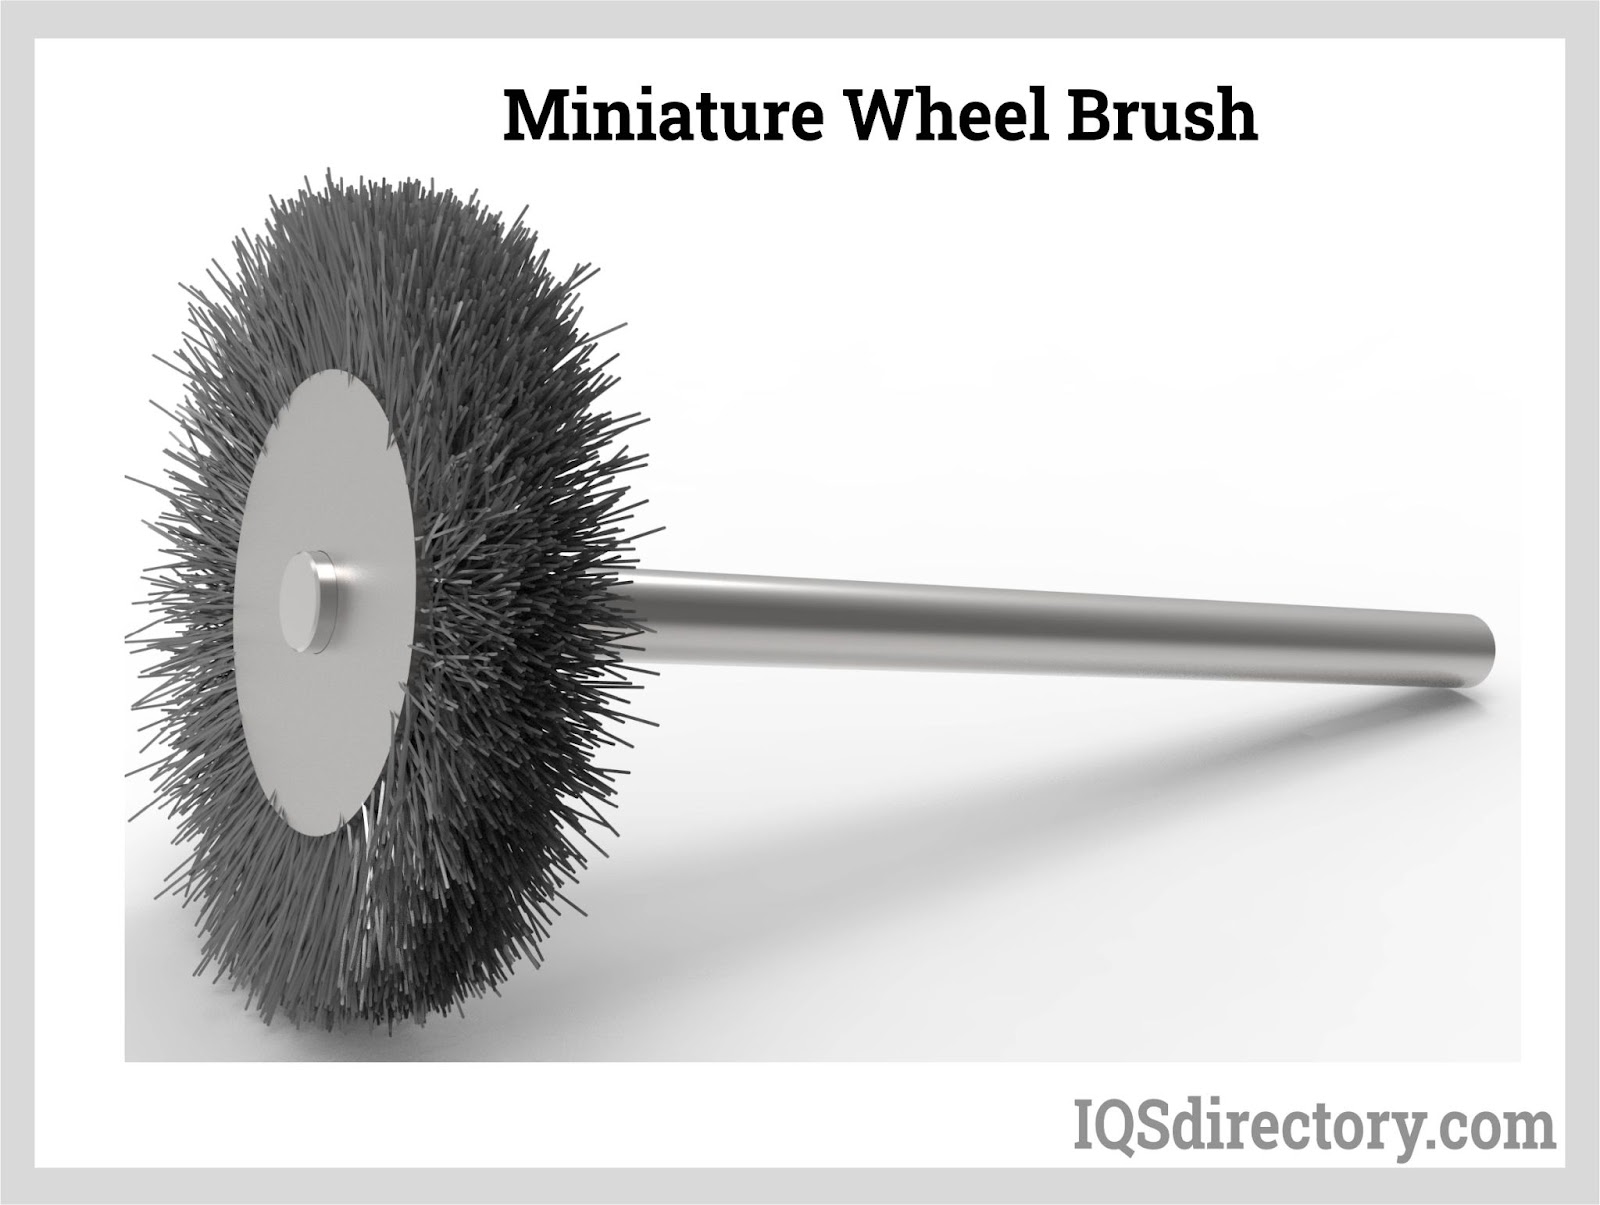 Miniature Wheel Brush